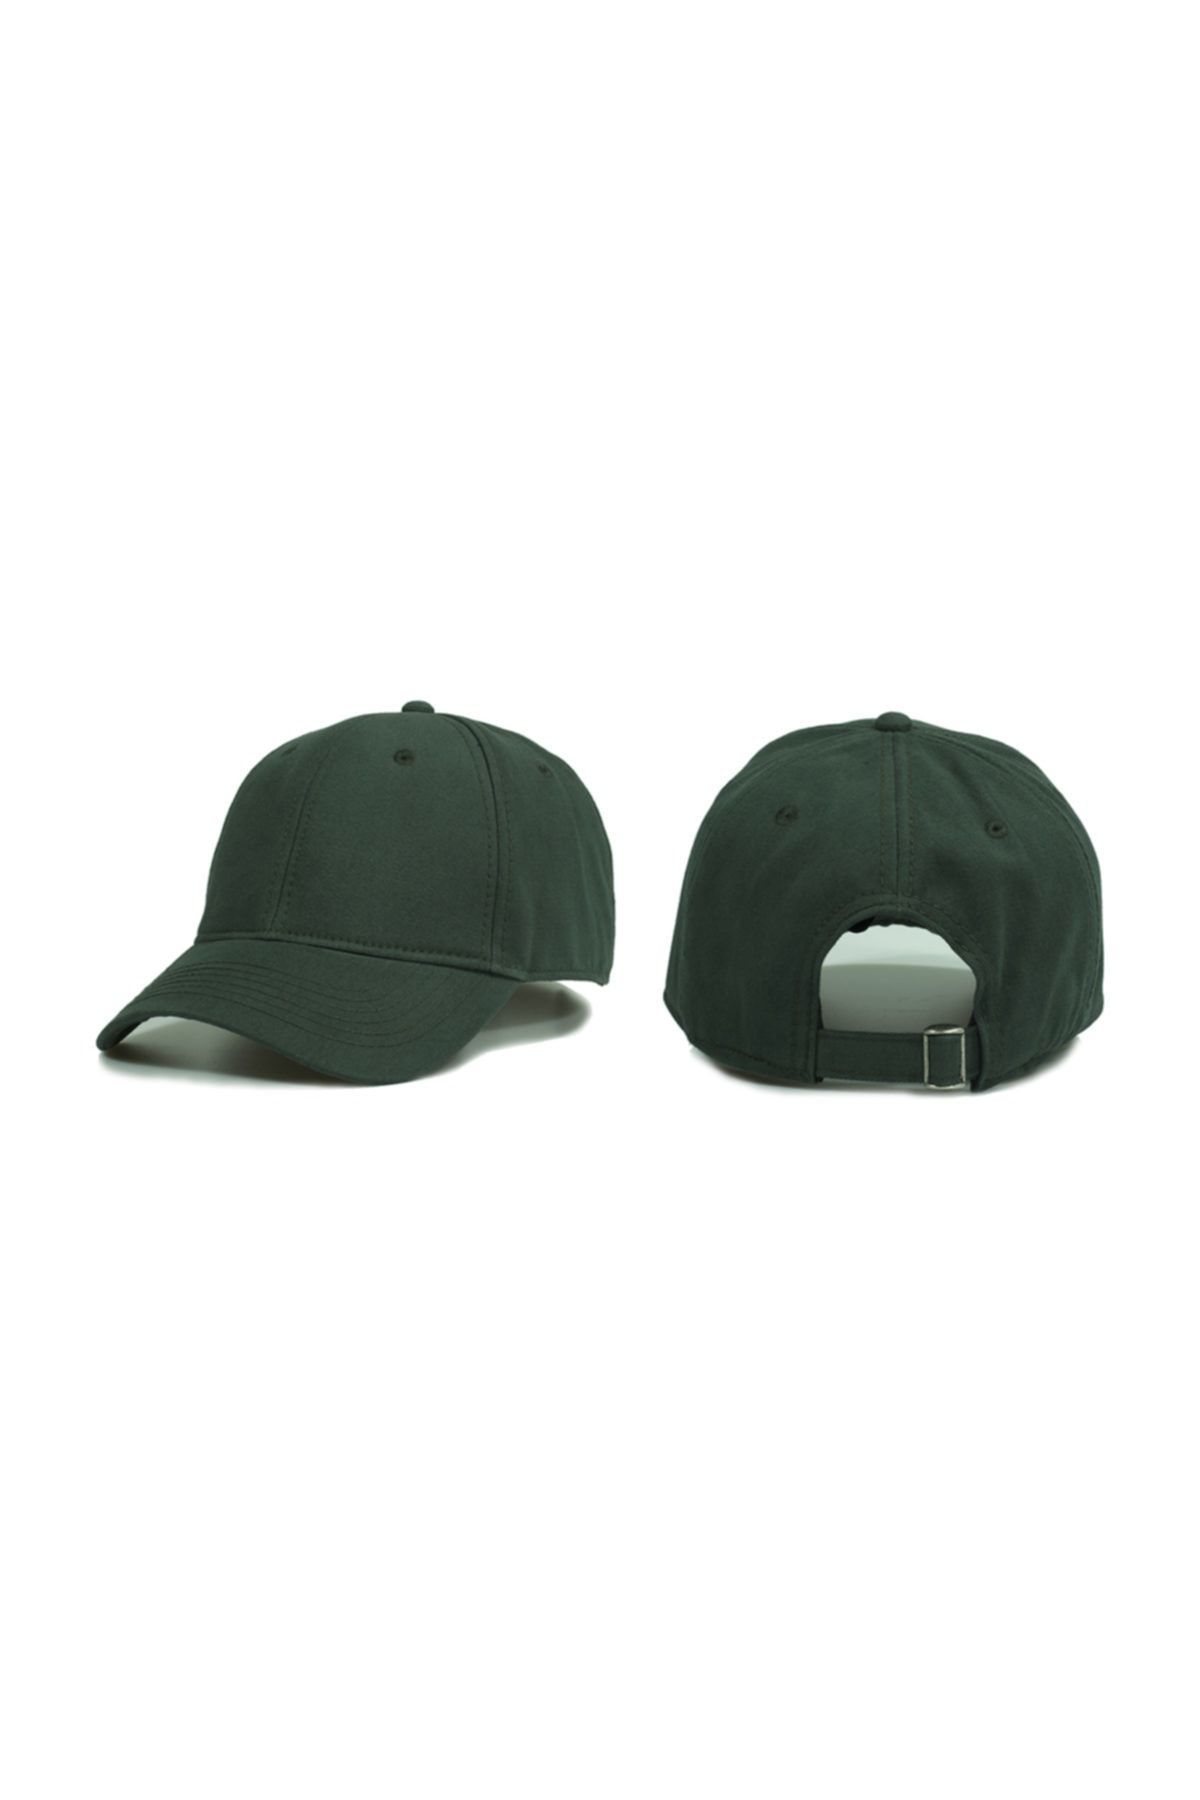 Silver Hawk Basic Şapka Modeli Yeşil